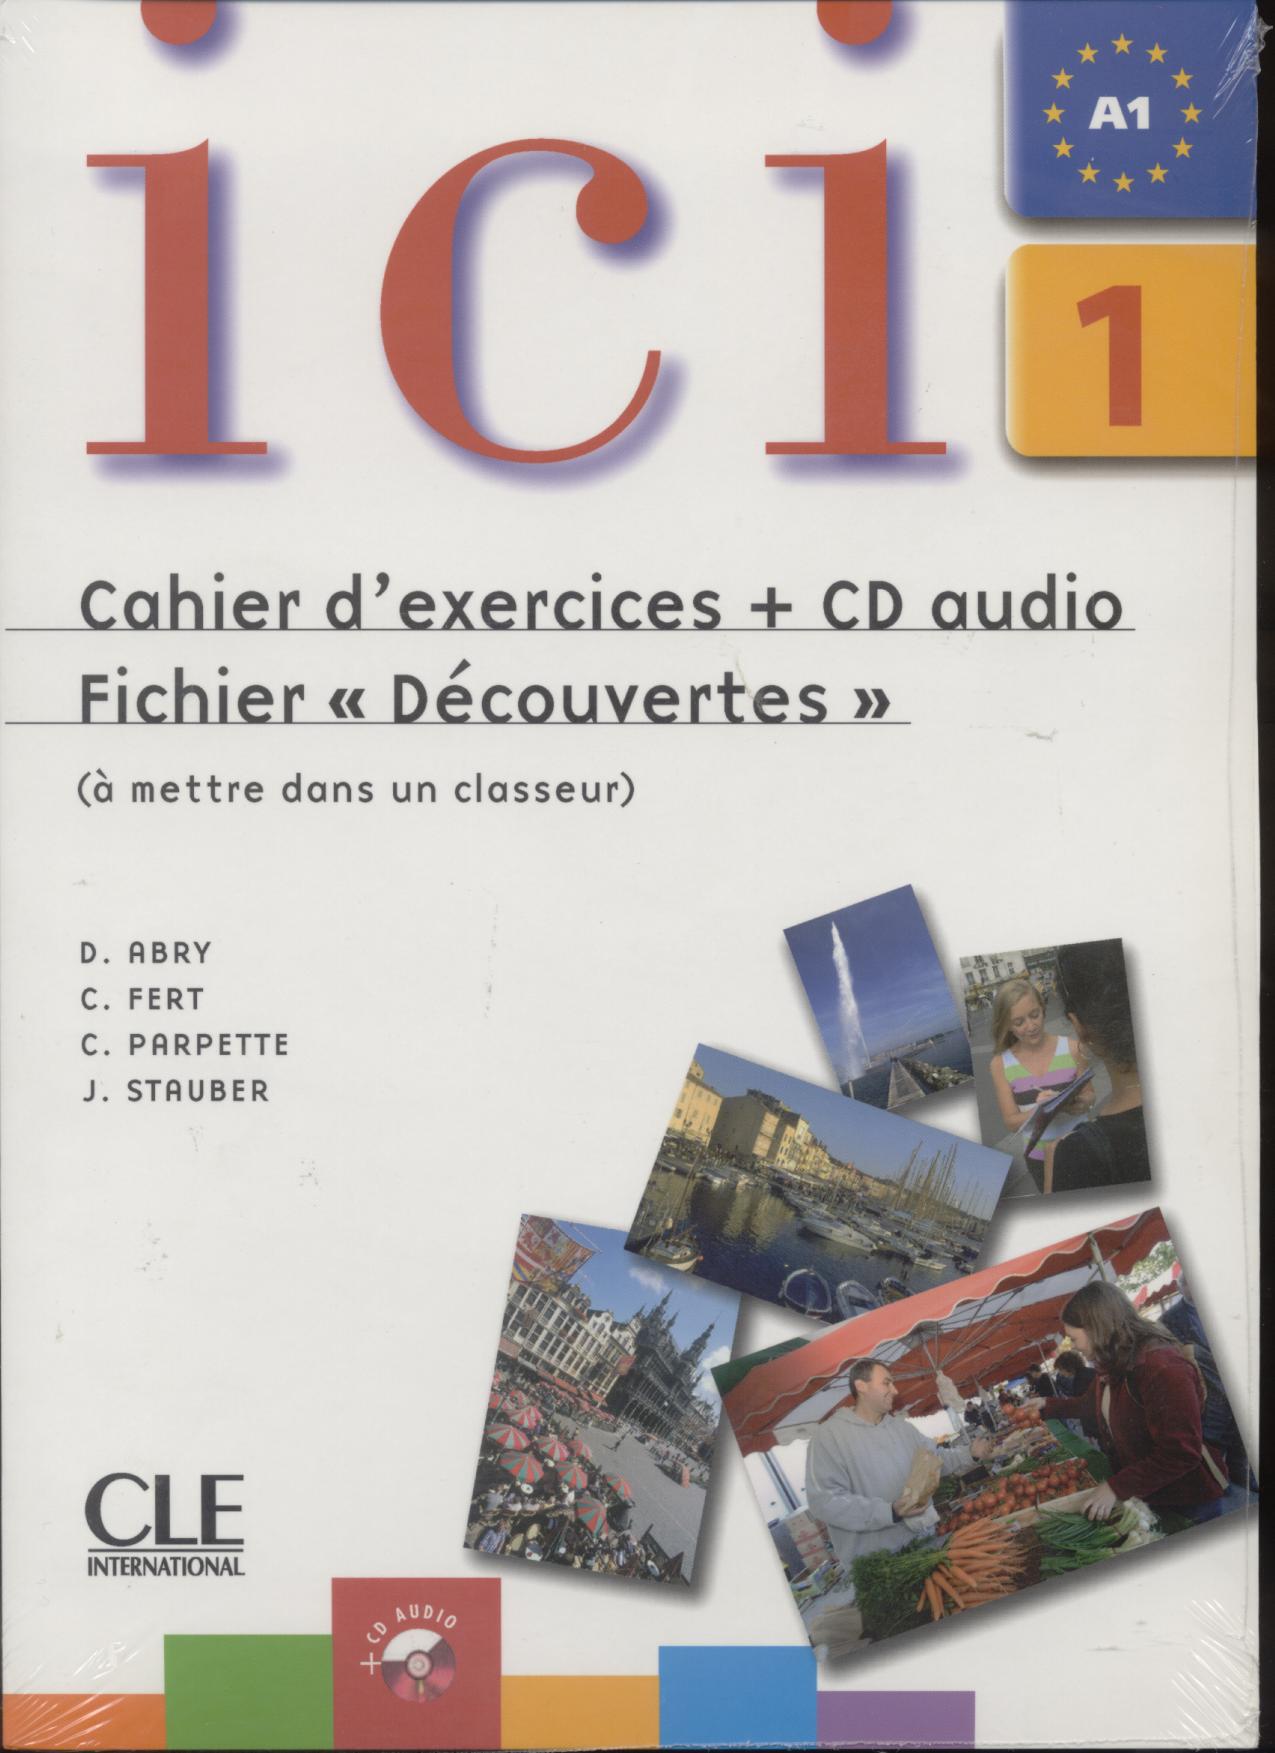 ICI 1 CE +CD FRANCOPHONE